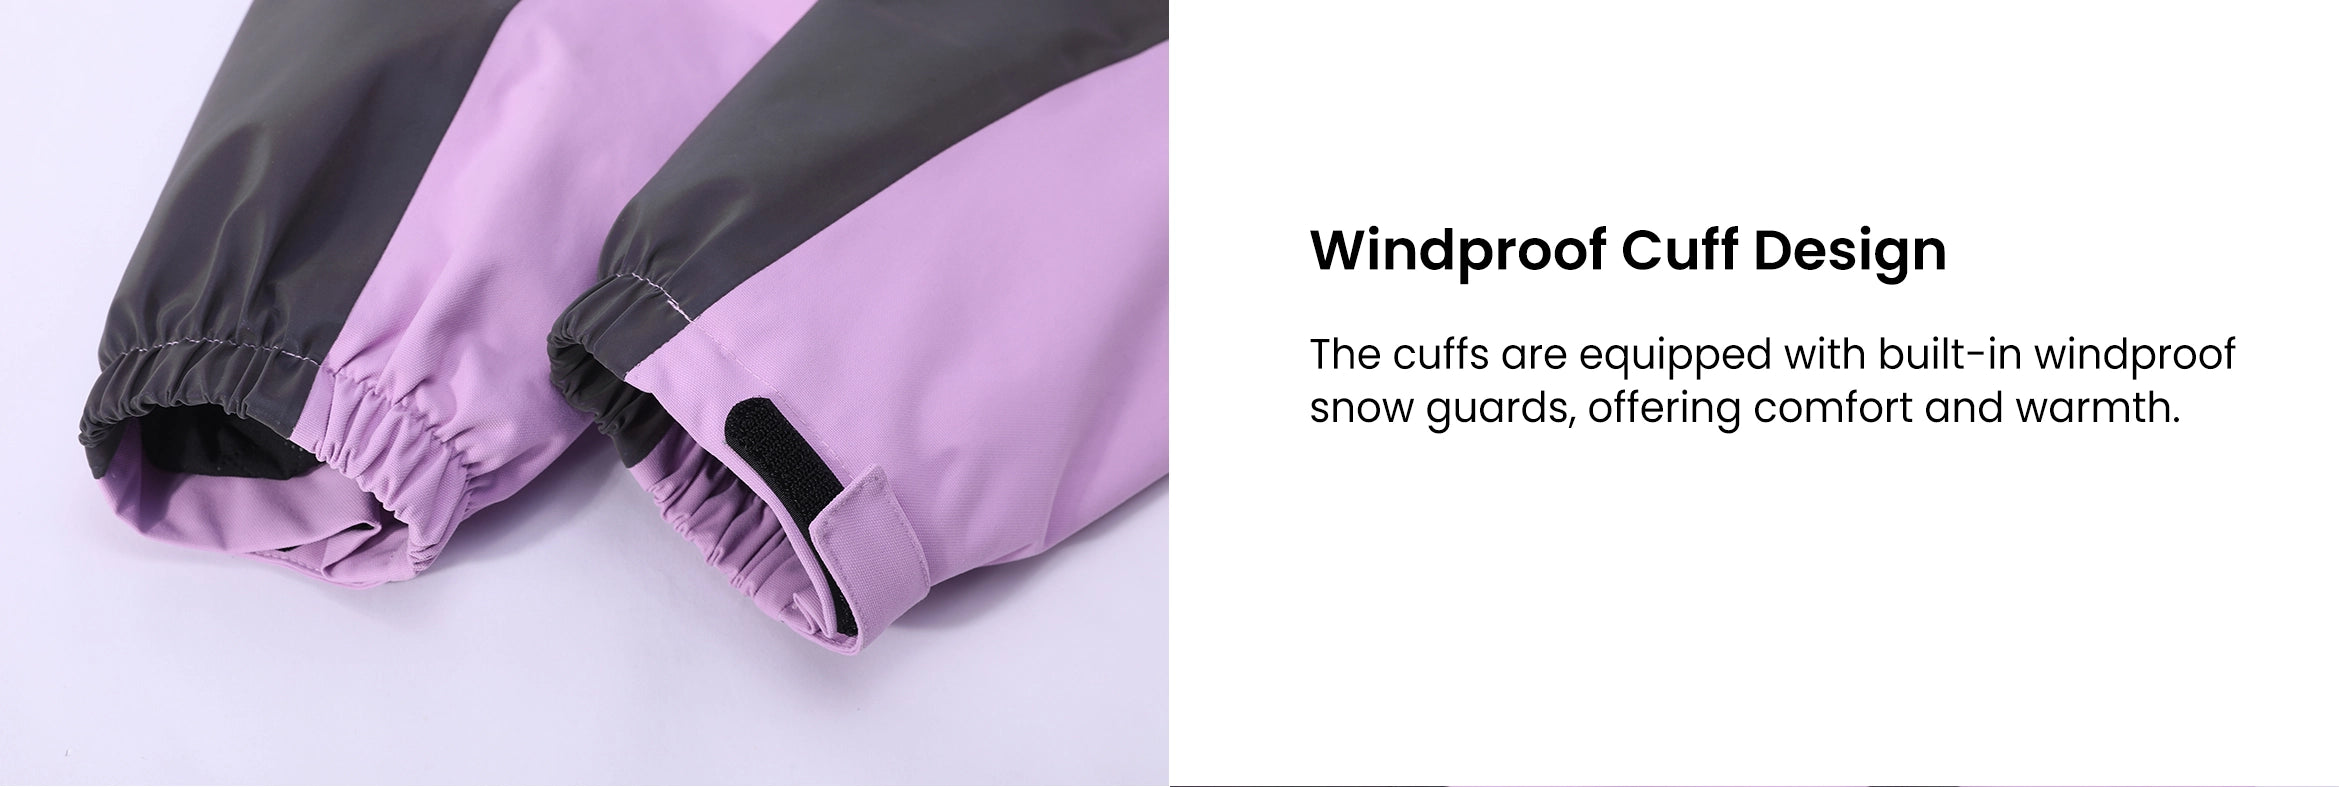 8. Windproof Cuff Design